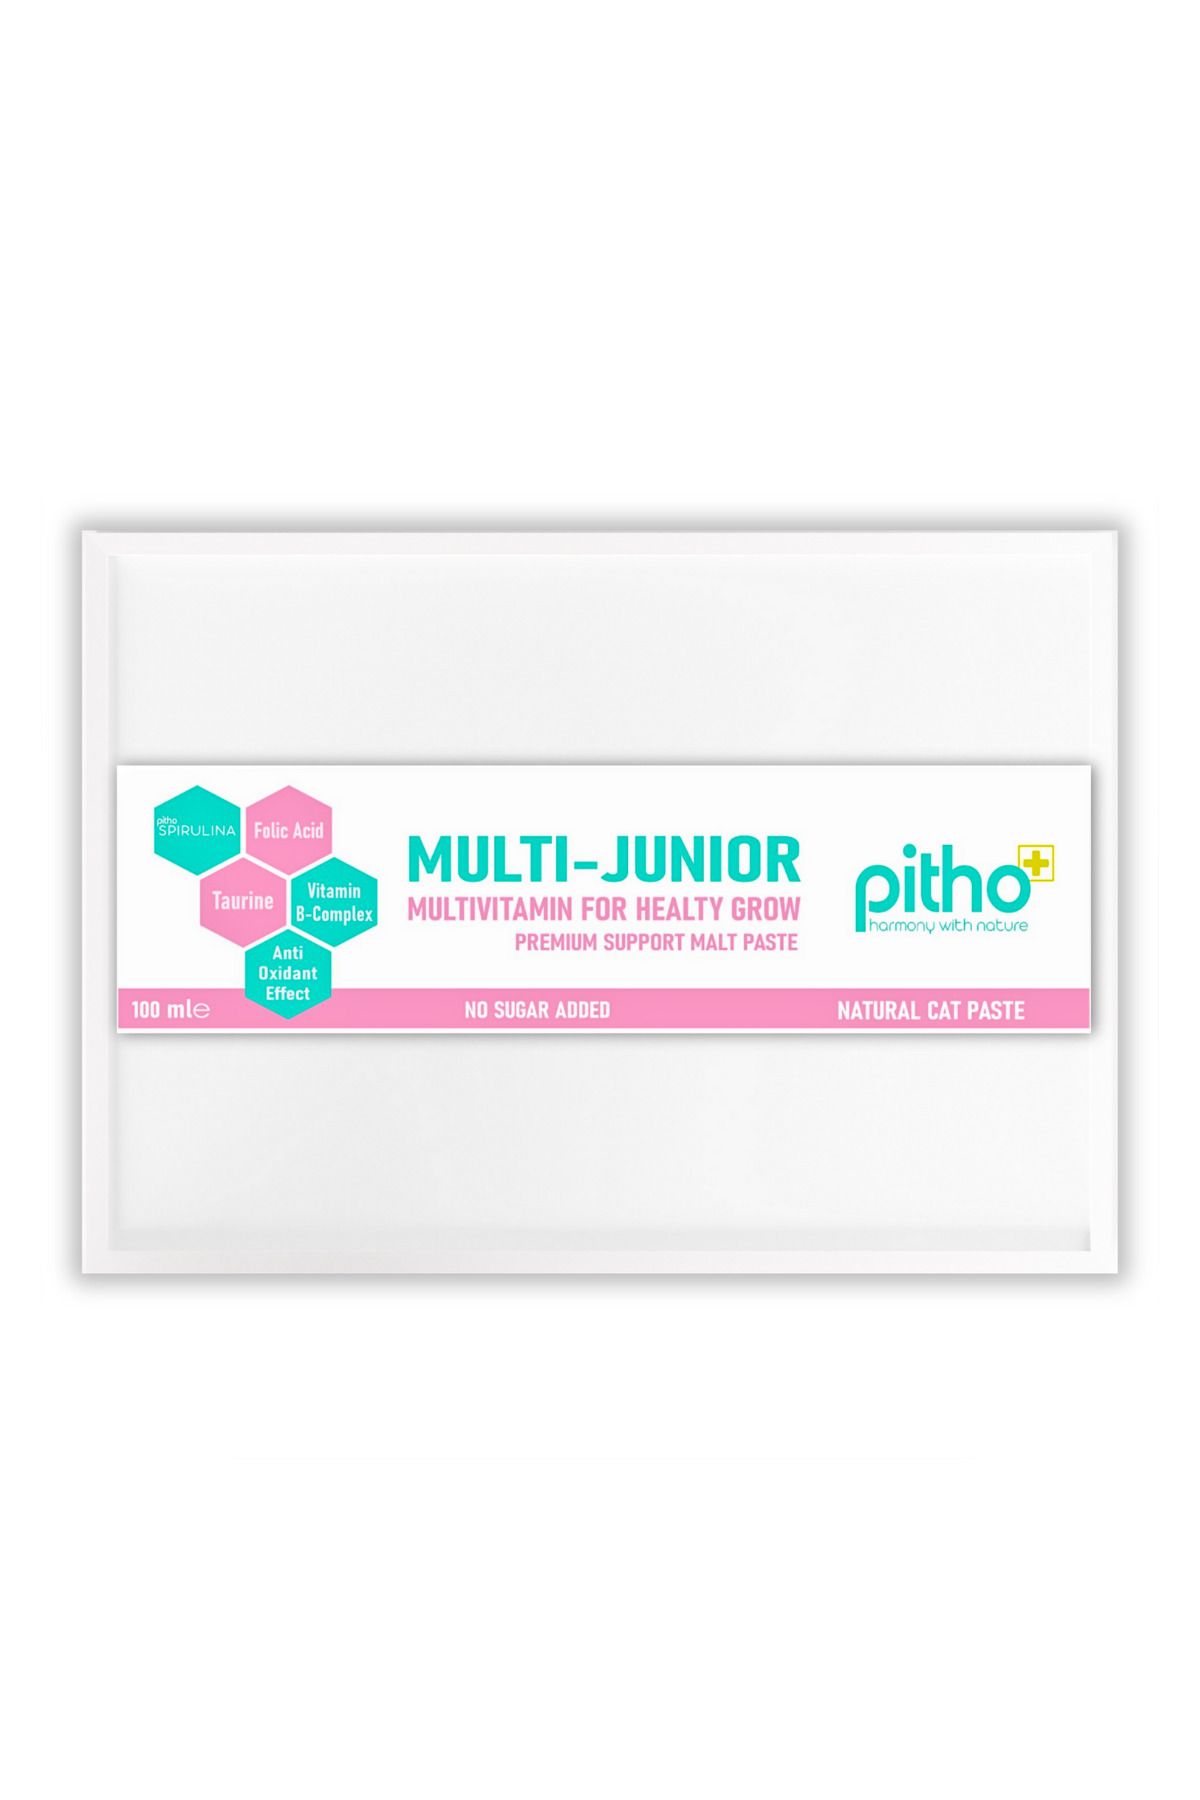 Pitho Multi Junior - Folik Asit Ve Taurin Içeren Yavru Kedi Vitamini Multivitamin Maltı